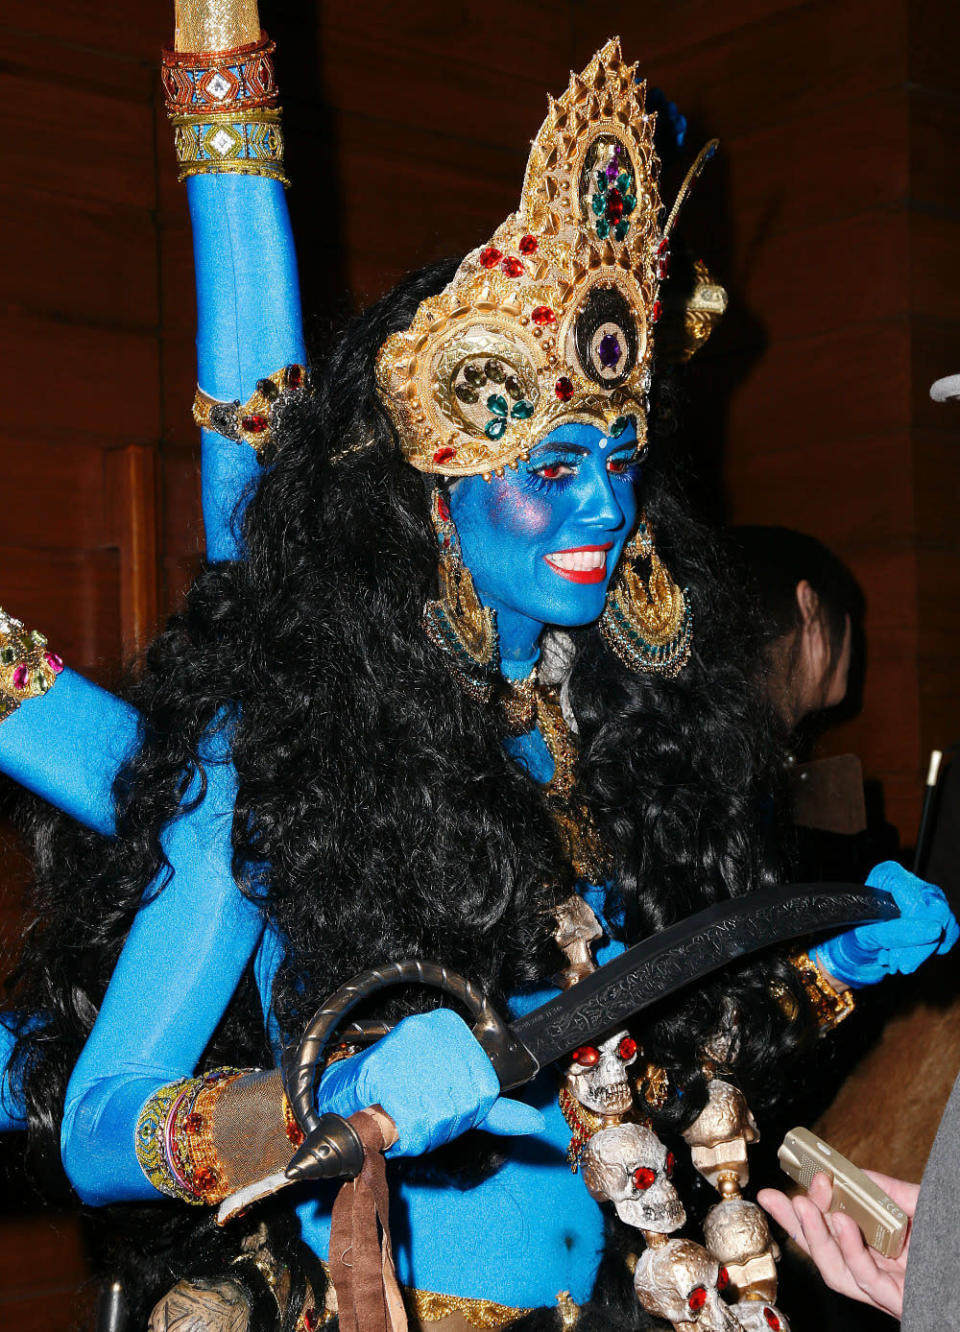 Ganz schön bunt und fantasievoll geht es auf Heidis legendären Halloween-Partys übrigens schon immer zu: 2008 hatte sie sich als leuchtend blaue indische Göttin Shiva verkleidet, und … (Bild: WENN)